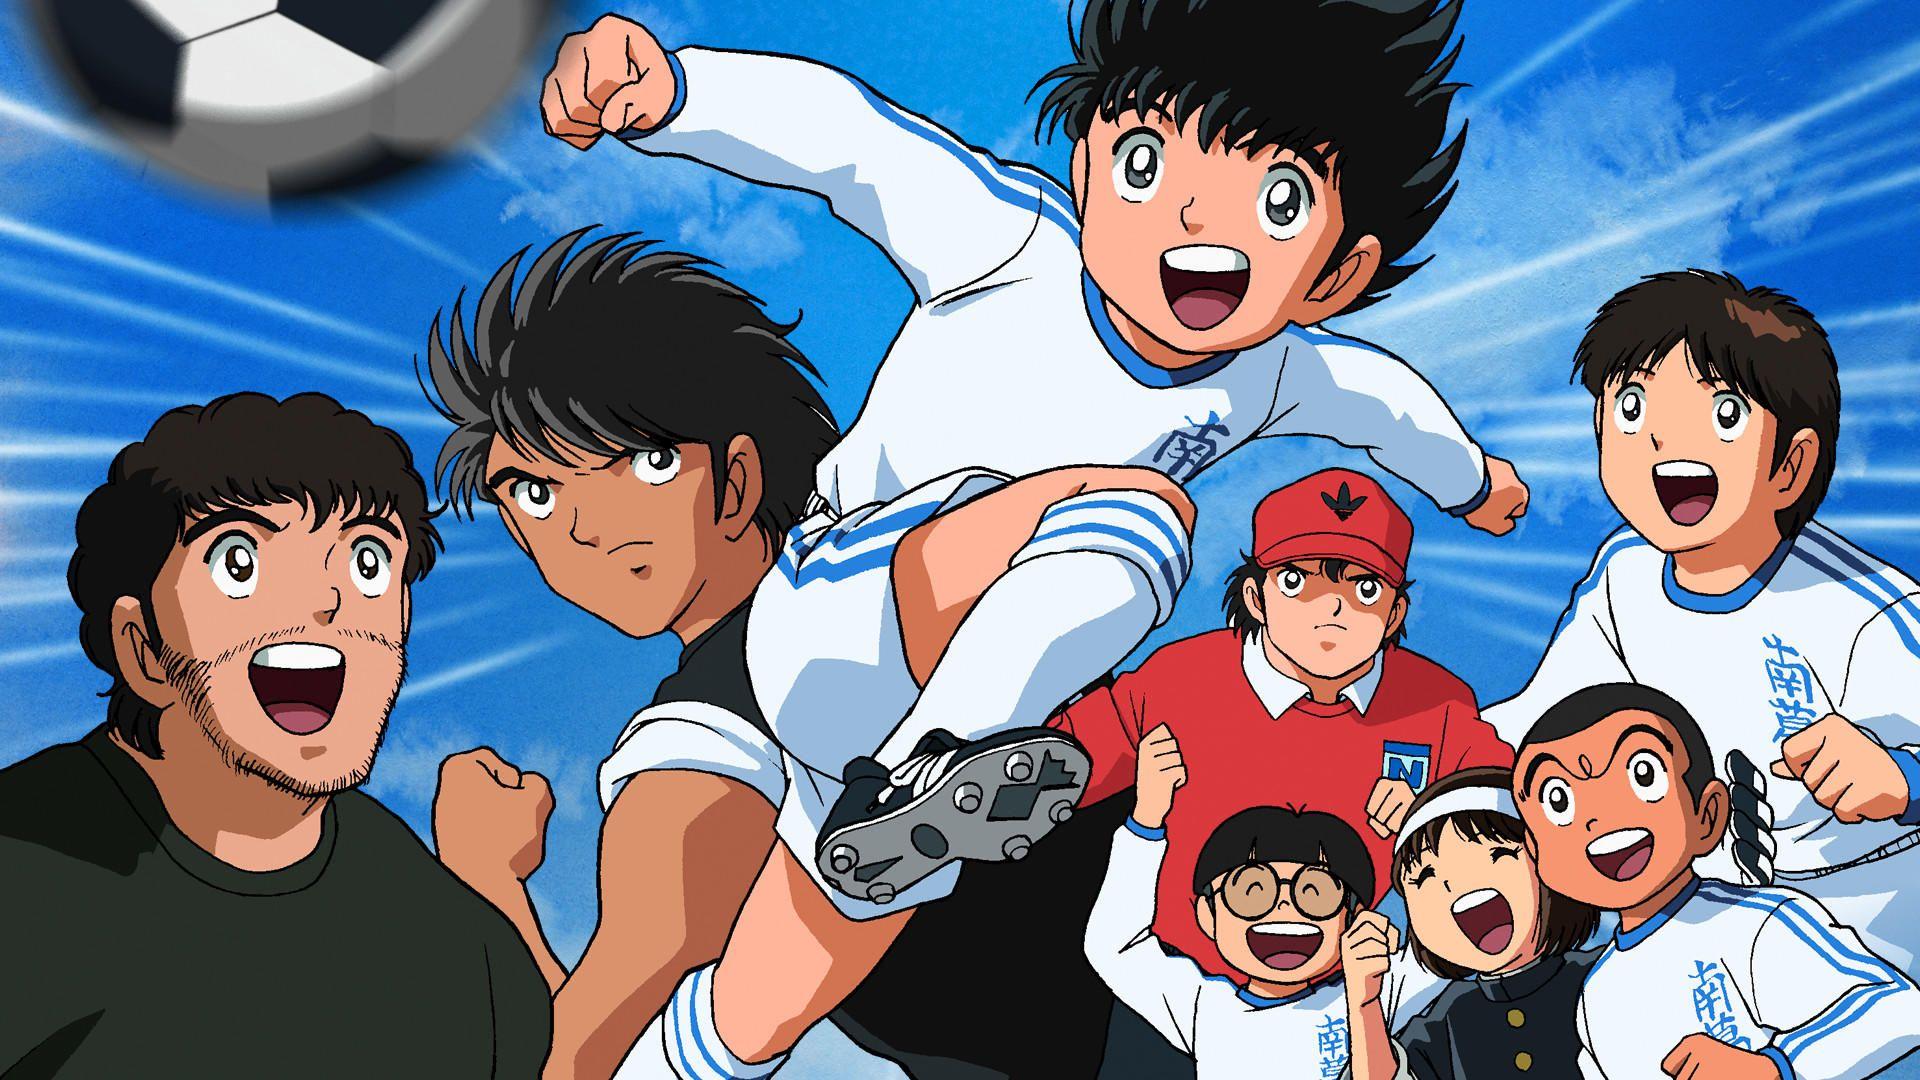 Tecmo’s Captain Tsubasa Series: A Creative Way To Adapt a Manga